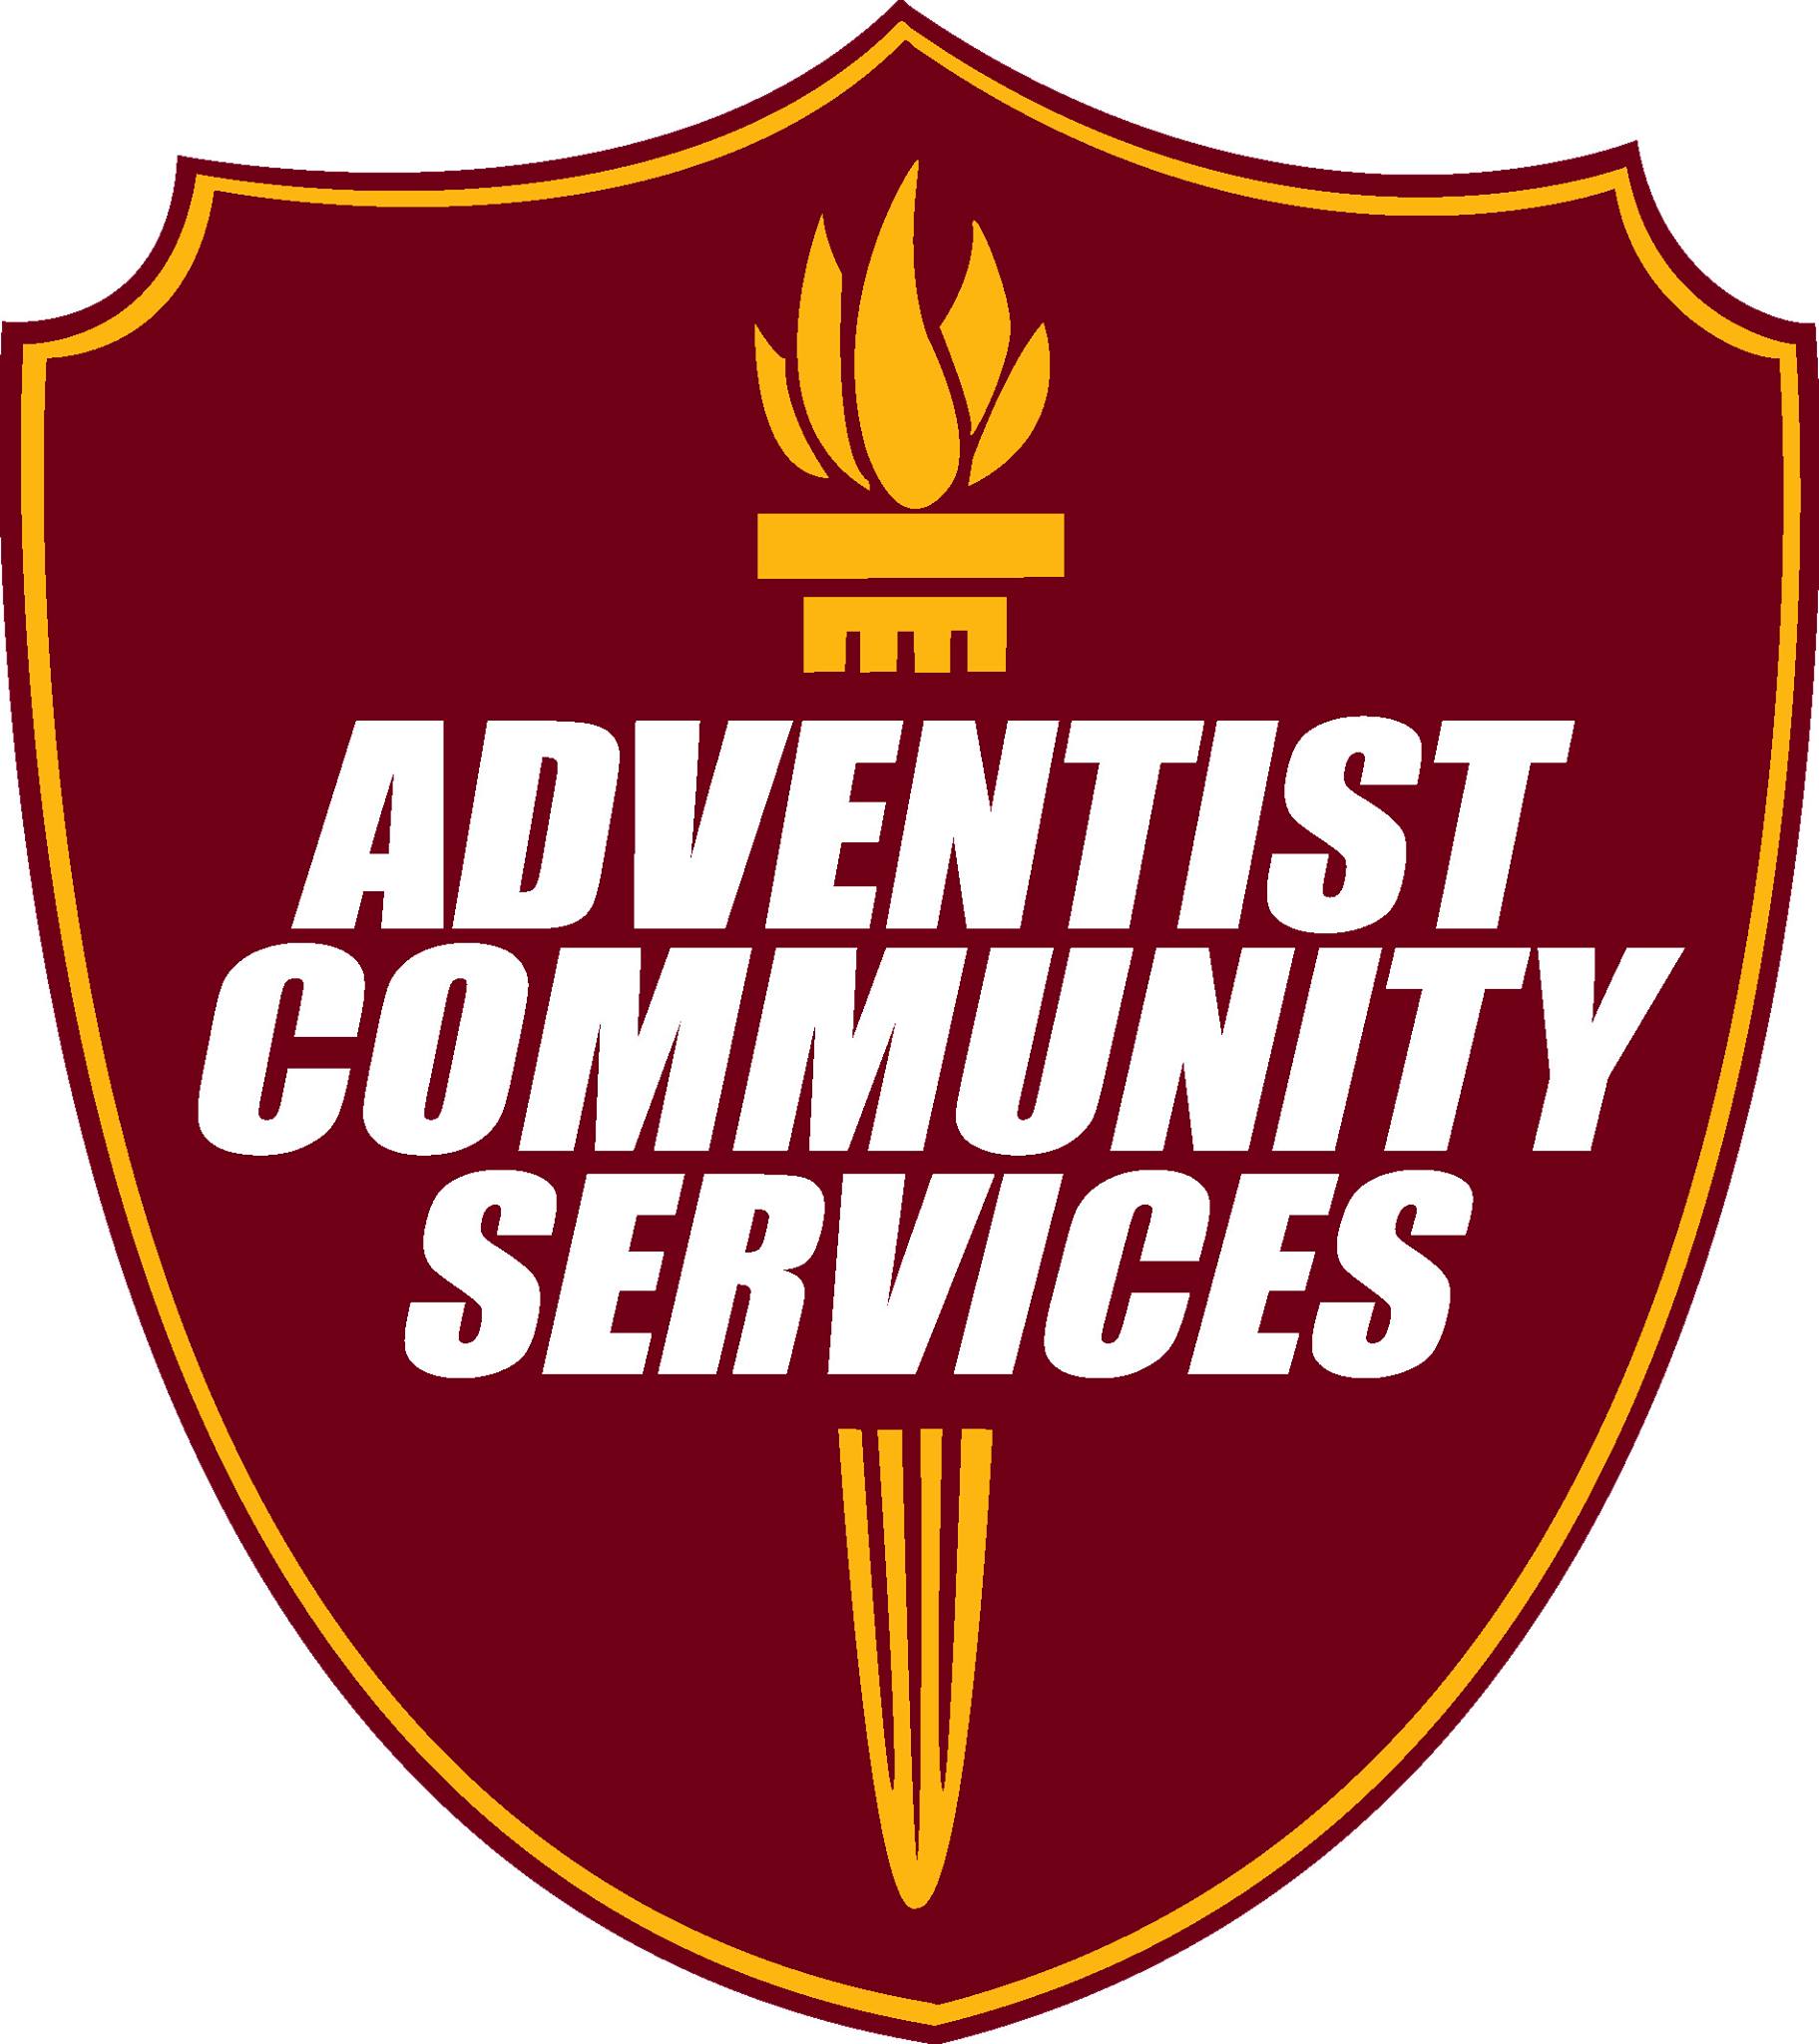 The Saint Louis Adventist Community Services Center